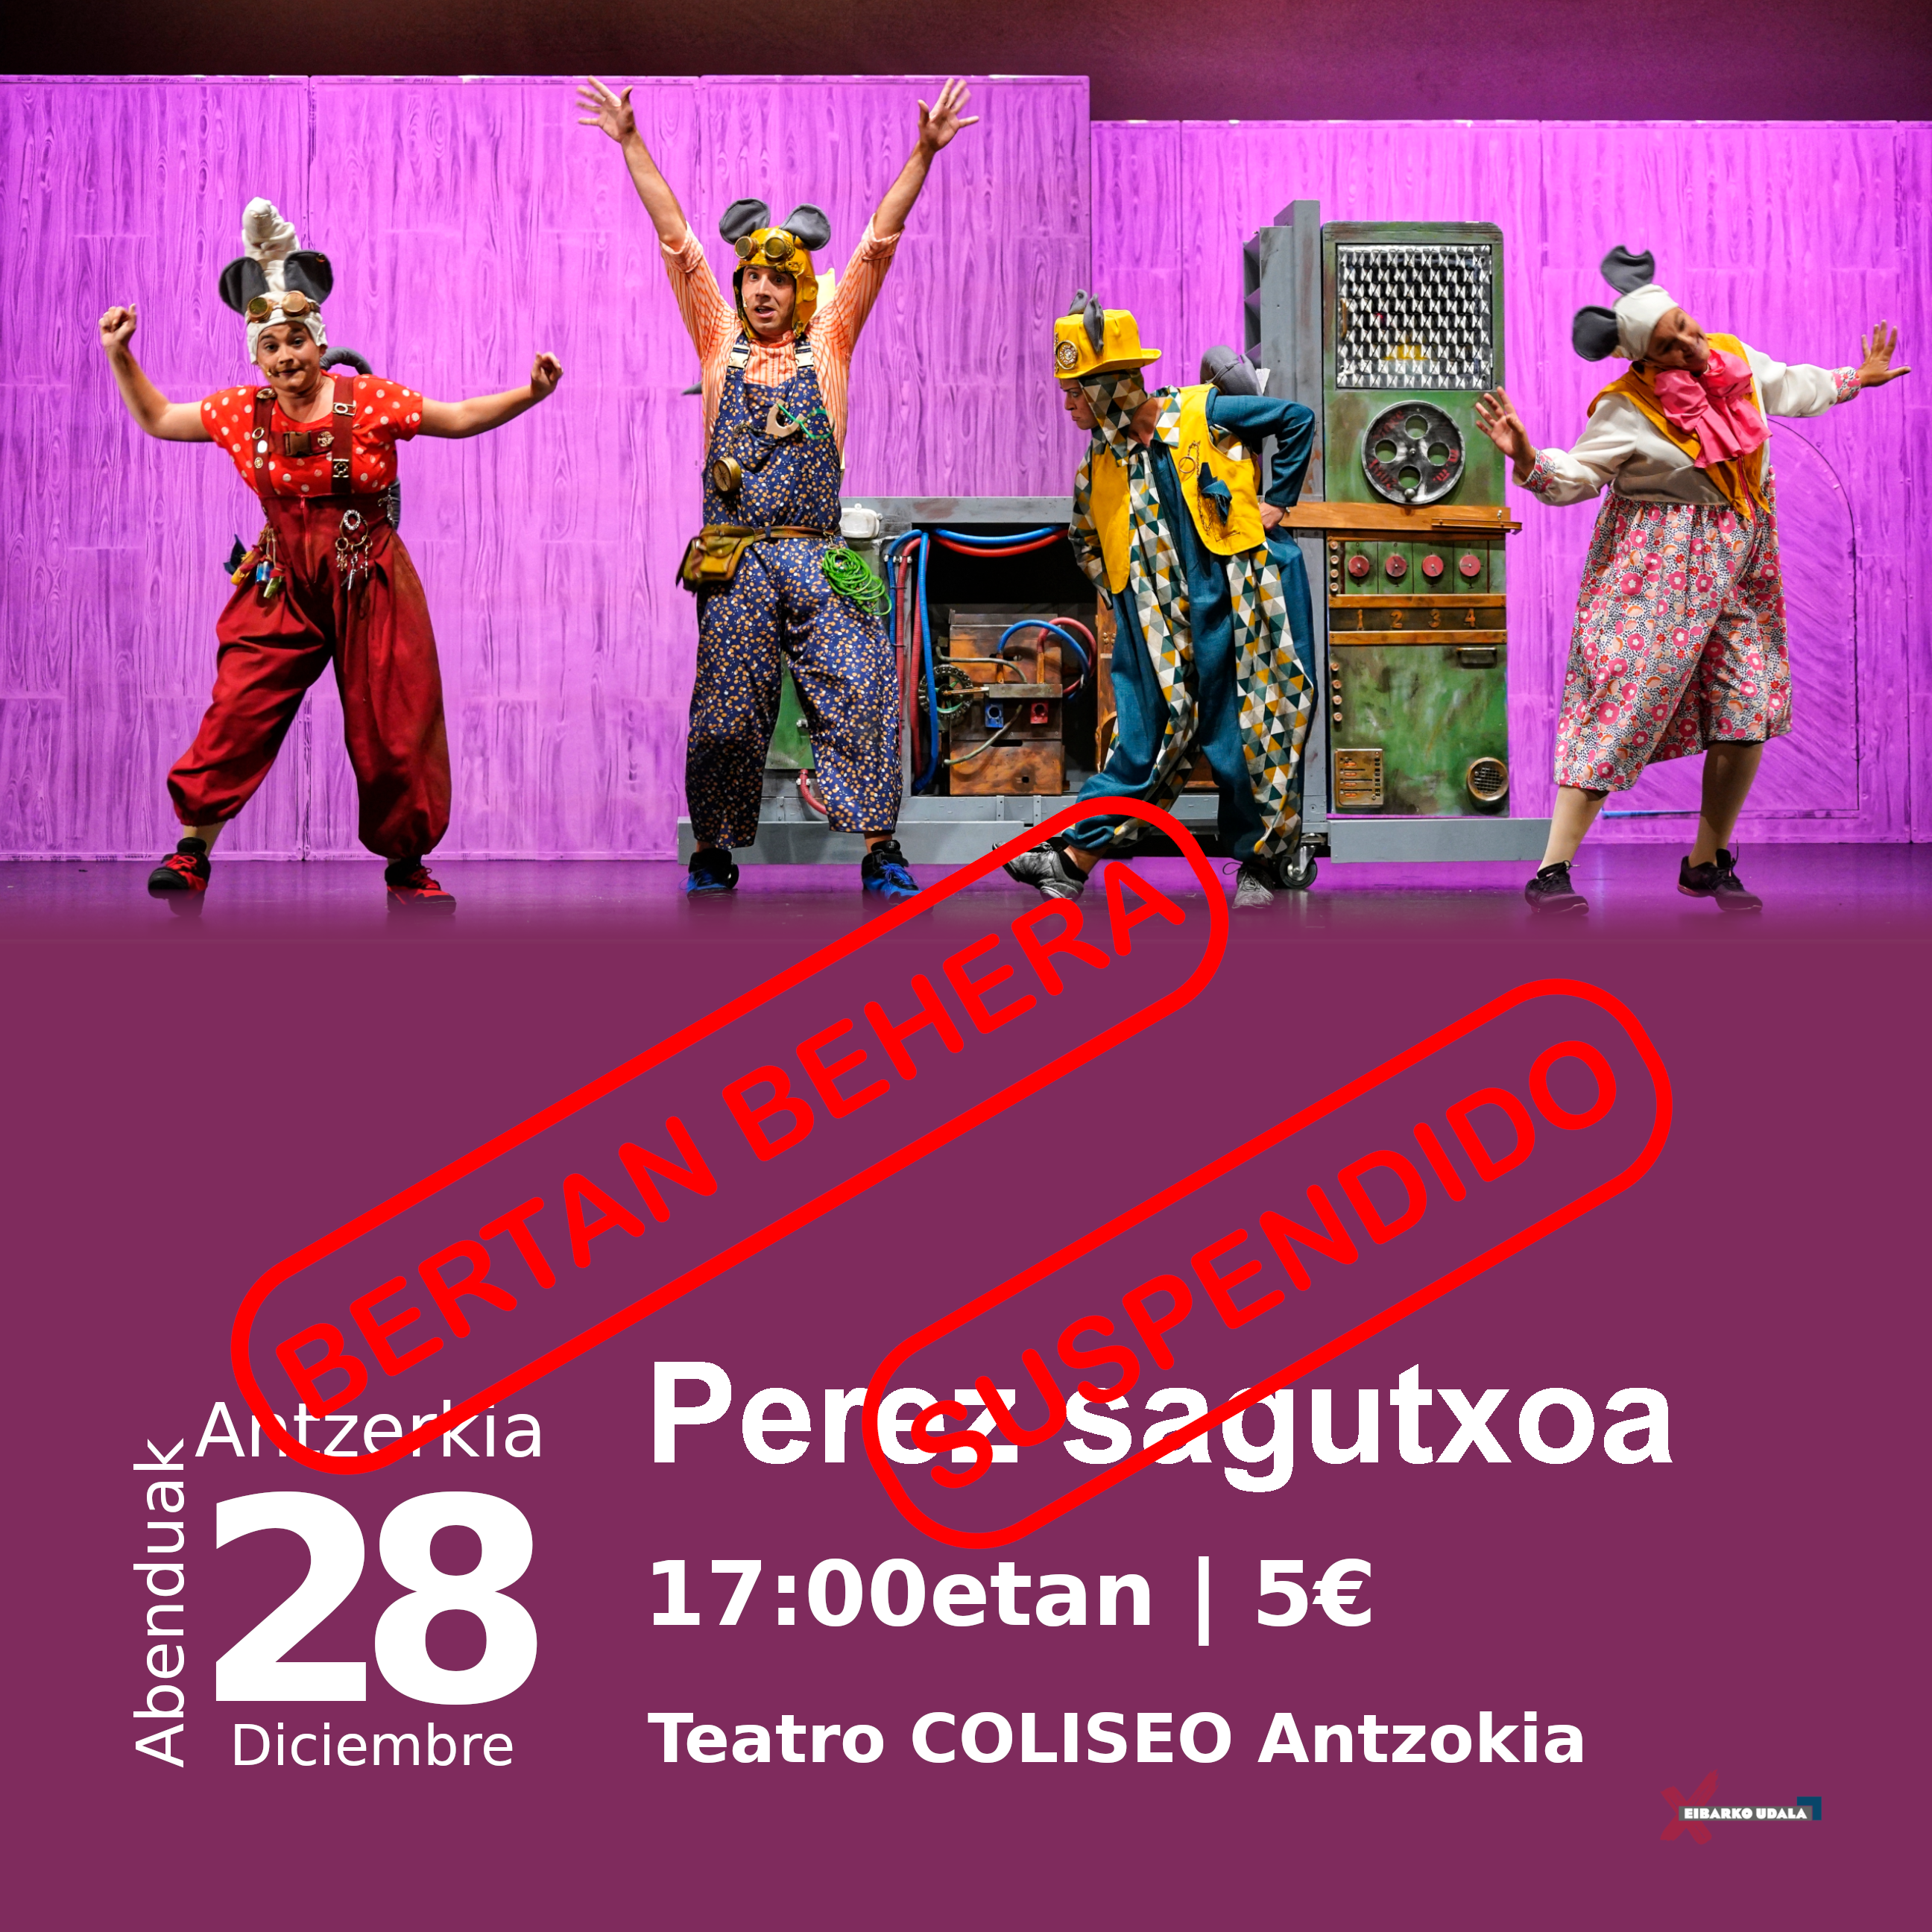 Se suspende la representación de la obra de teatro Perez Sagutxoa